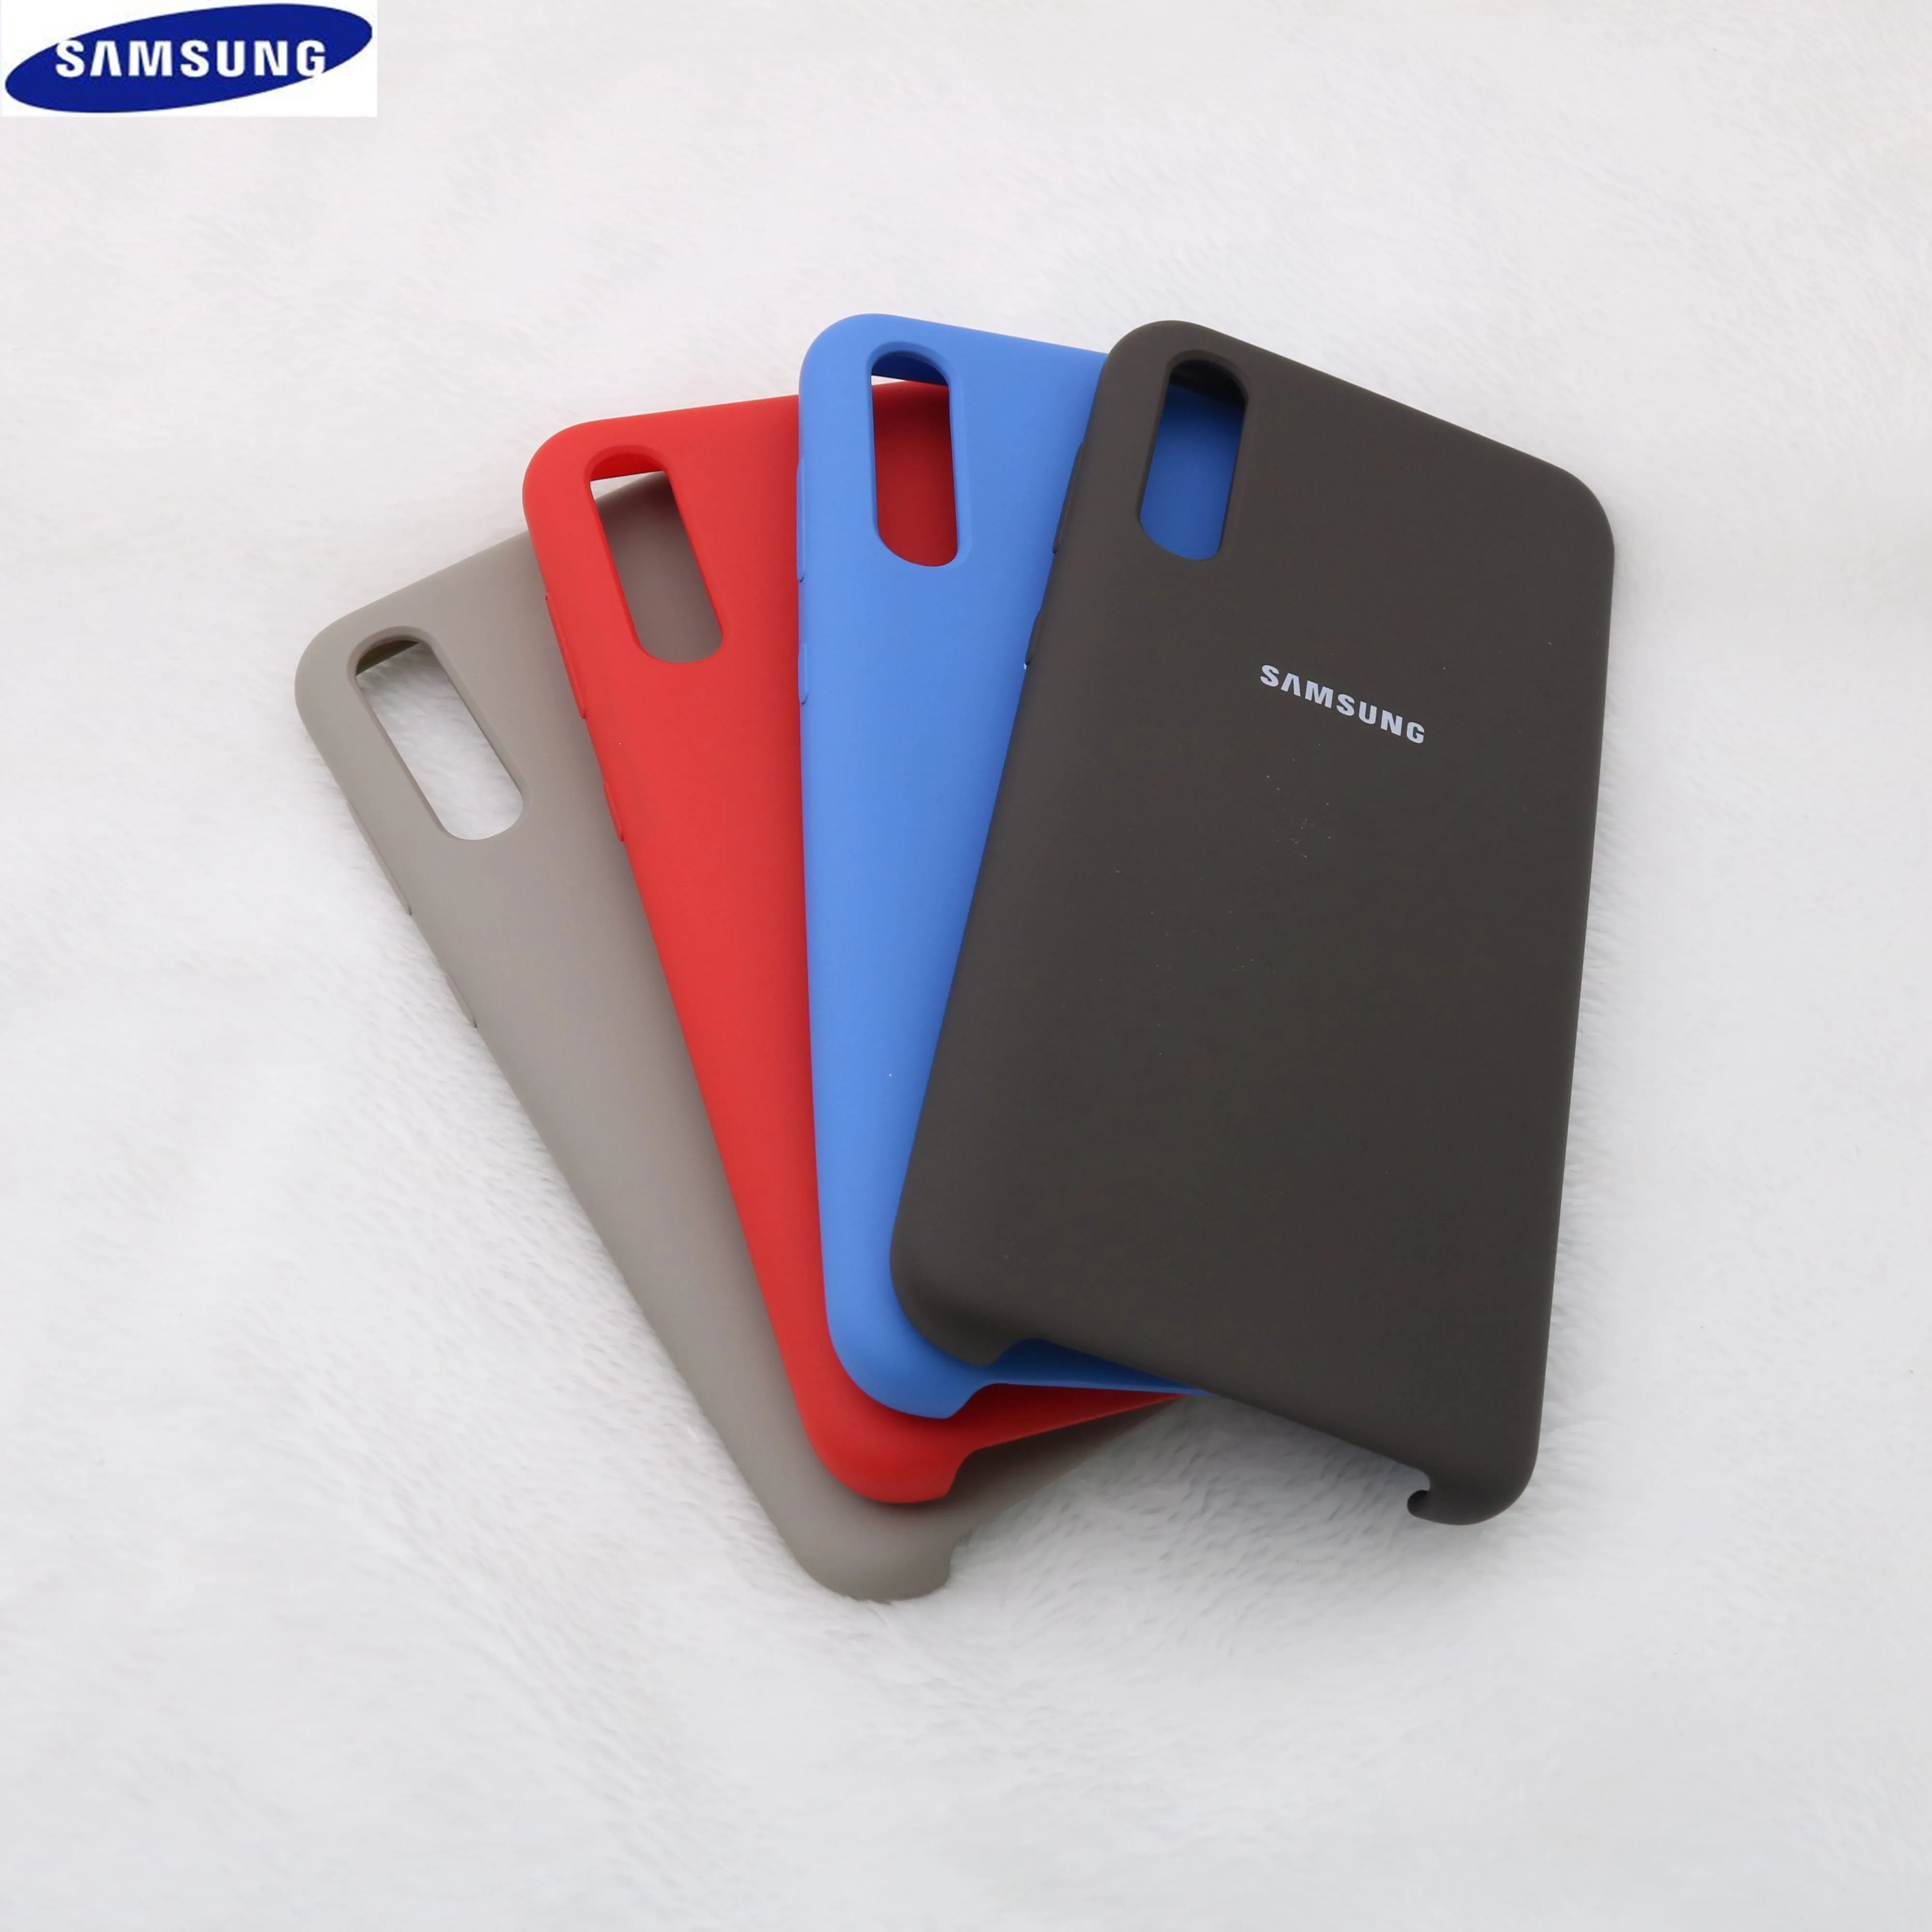 Samsung A50 Чехол жидкий силикон мягкий защитный samsung Galaxy A70 A50 A30 A10 A60 A40 A90 чехол для Galaxy A50 чехол